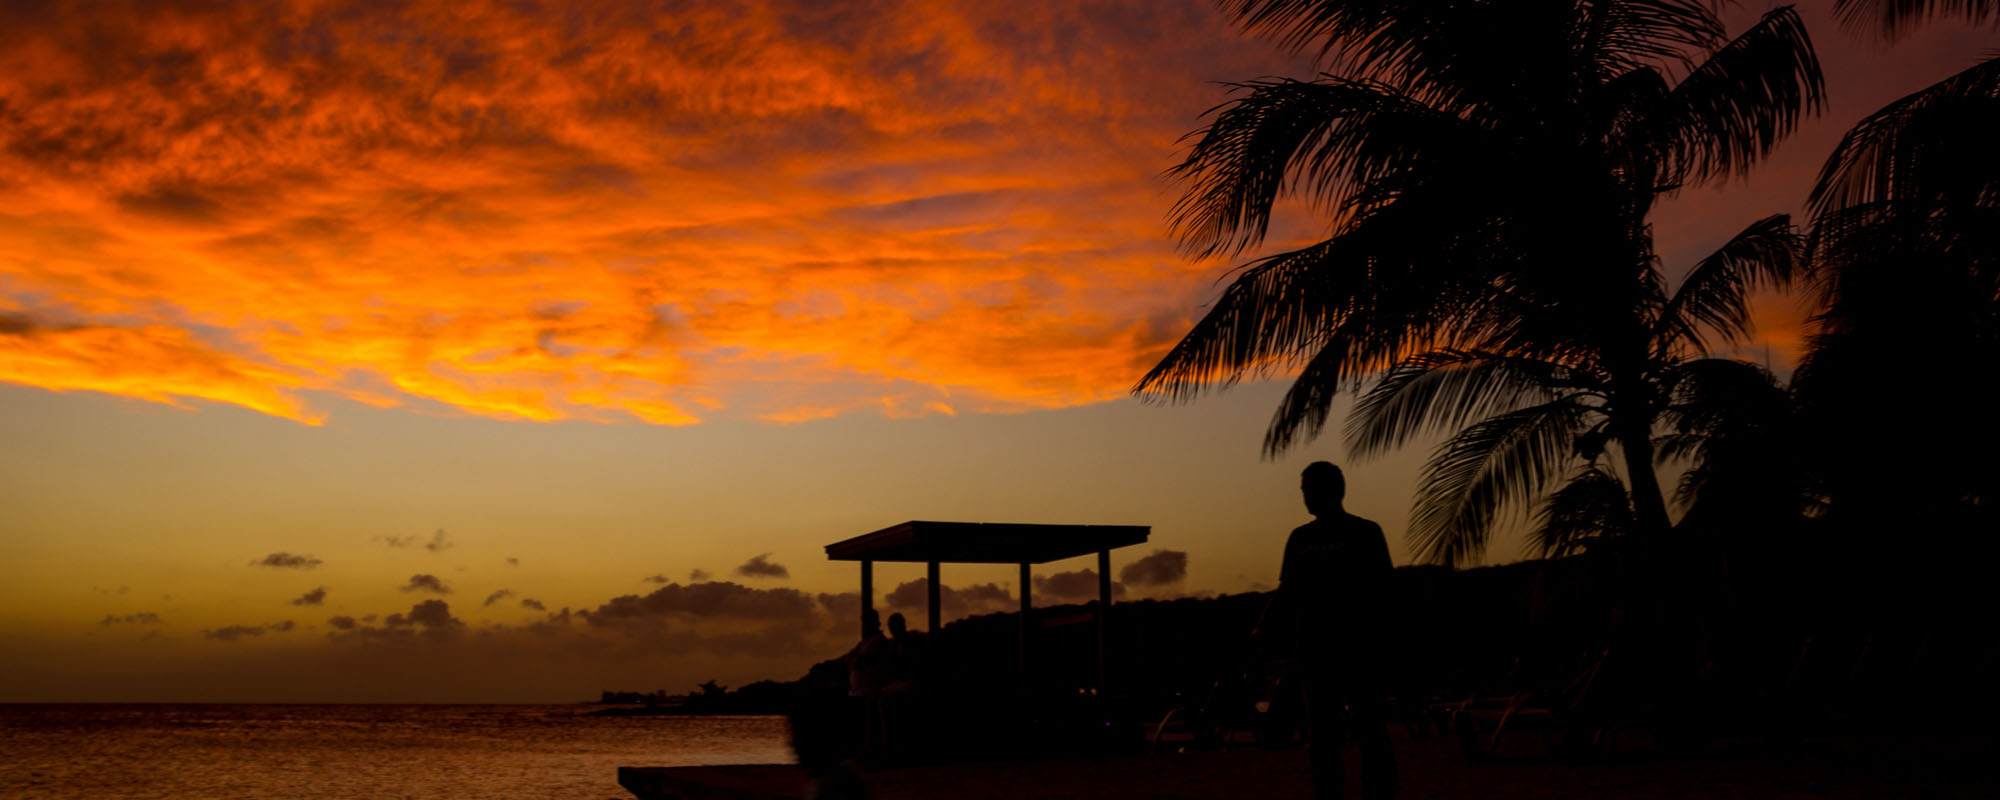 A tropical Florida Key sunset